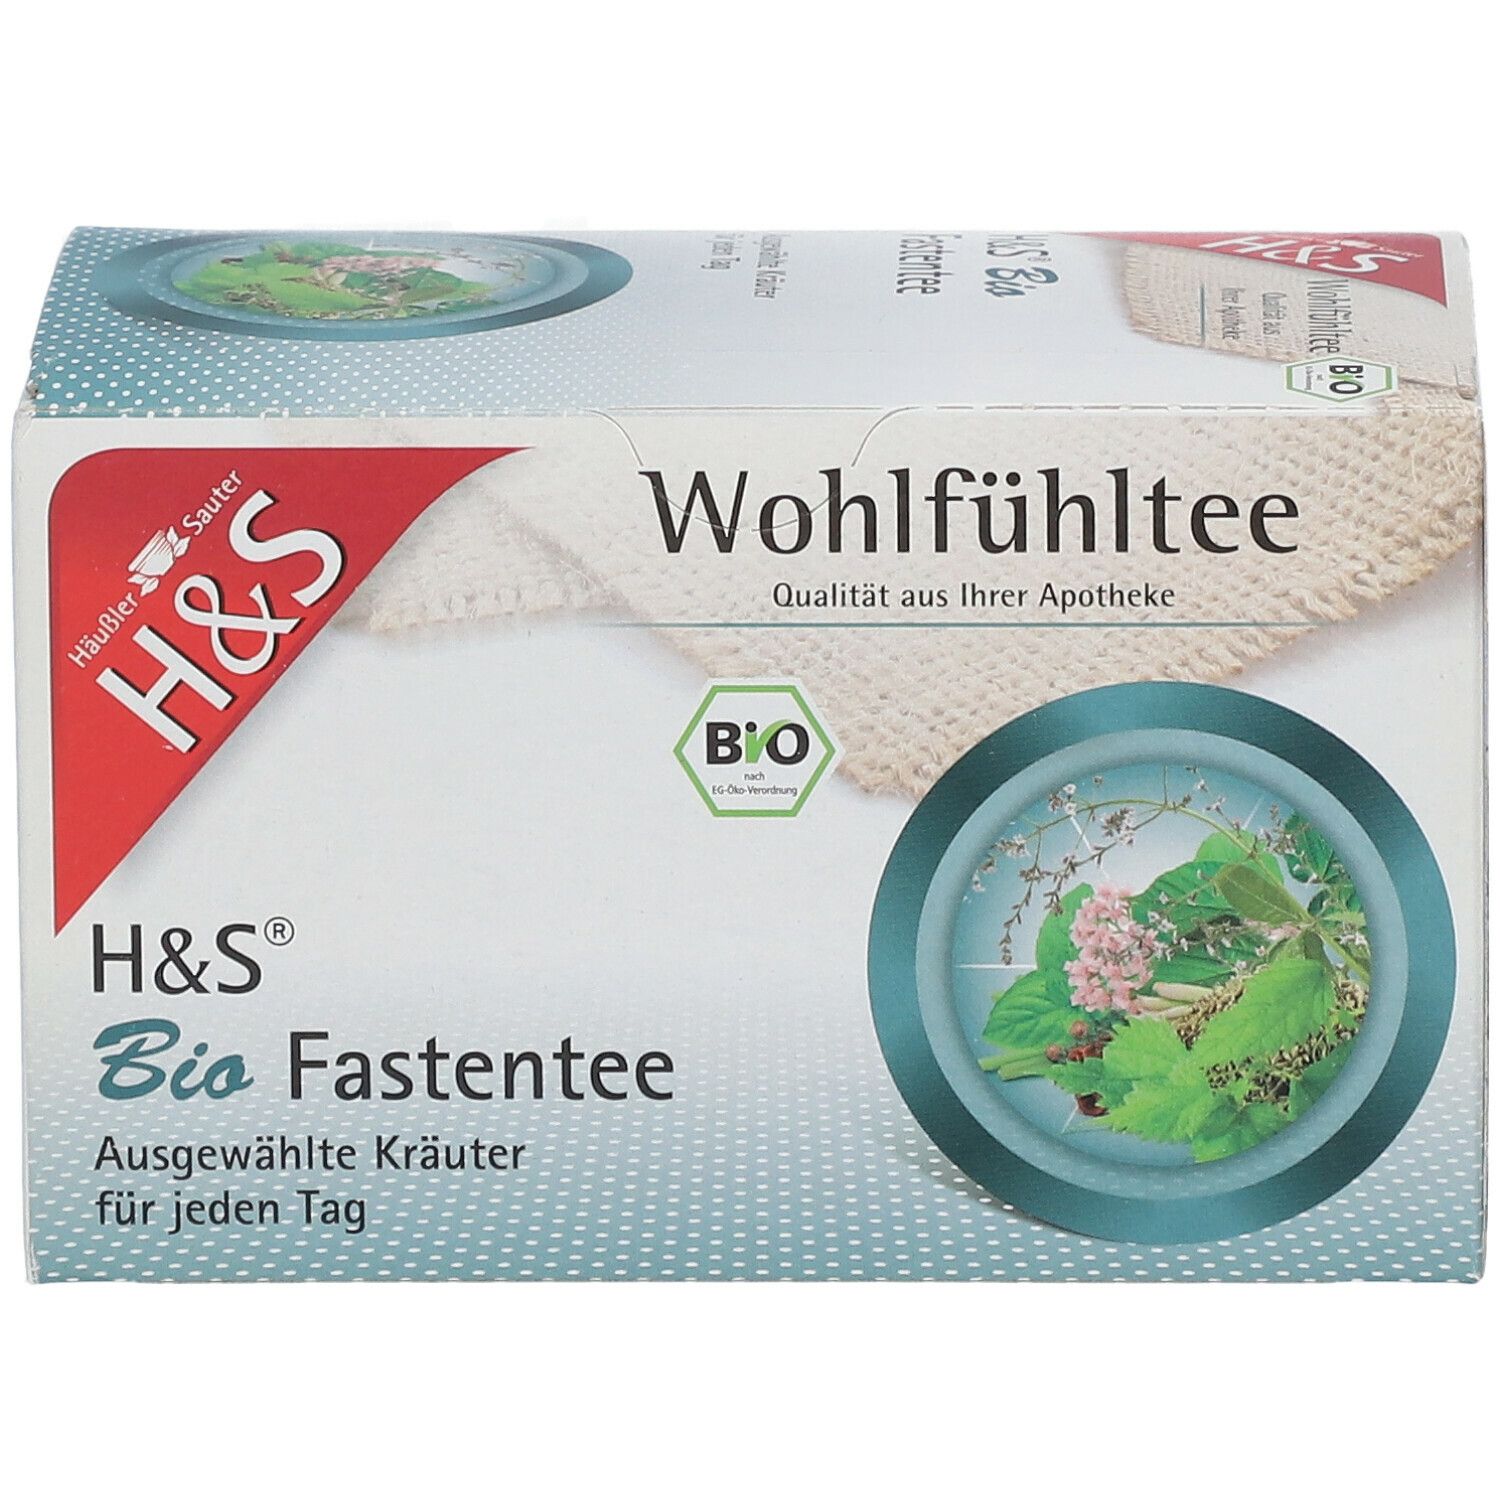 H&S Bio Fastentee - Kräutertee